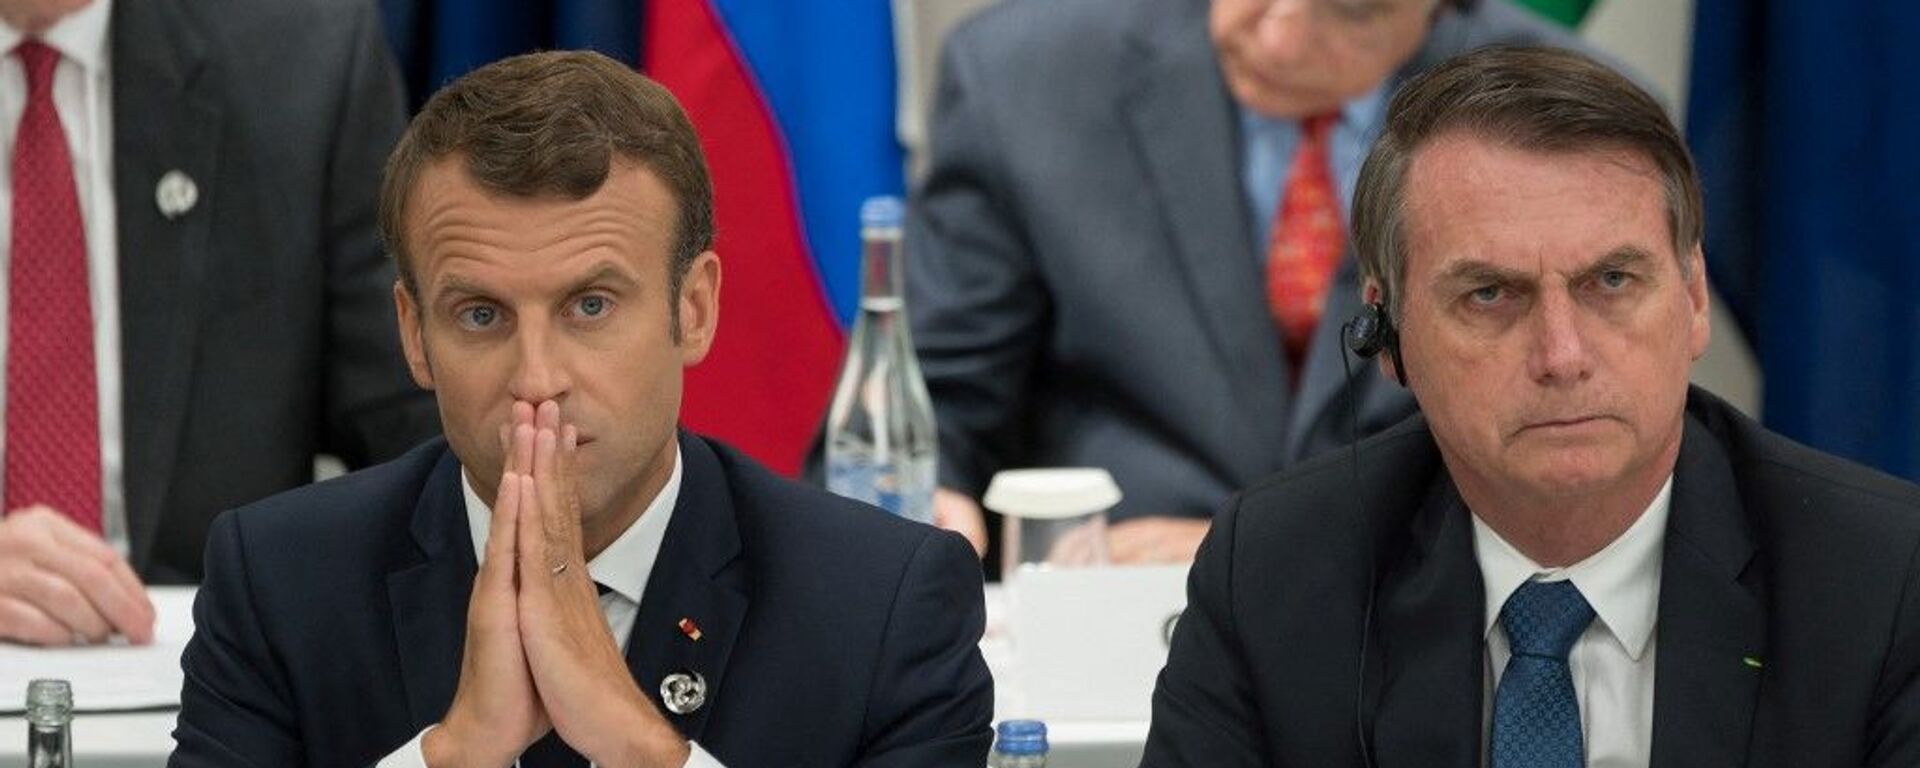 O presidente francês, Emmanuel Macron, ao lado do presidente brasileiro, Jair Bolsonaro, durante cúpula do G20 em 2019, no Japão - Sputnik Brasil, 1920, 09.02.2022